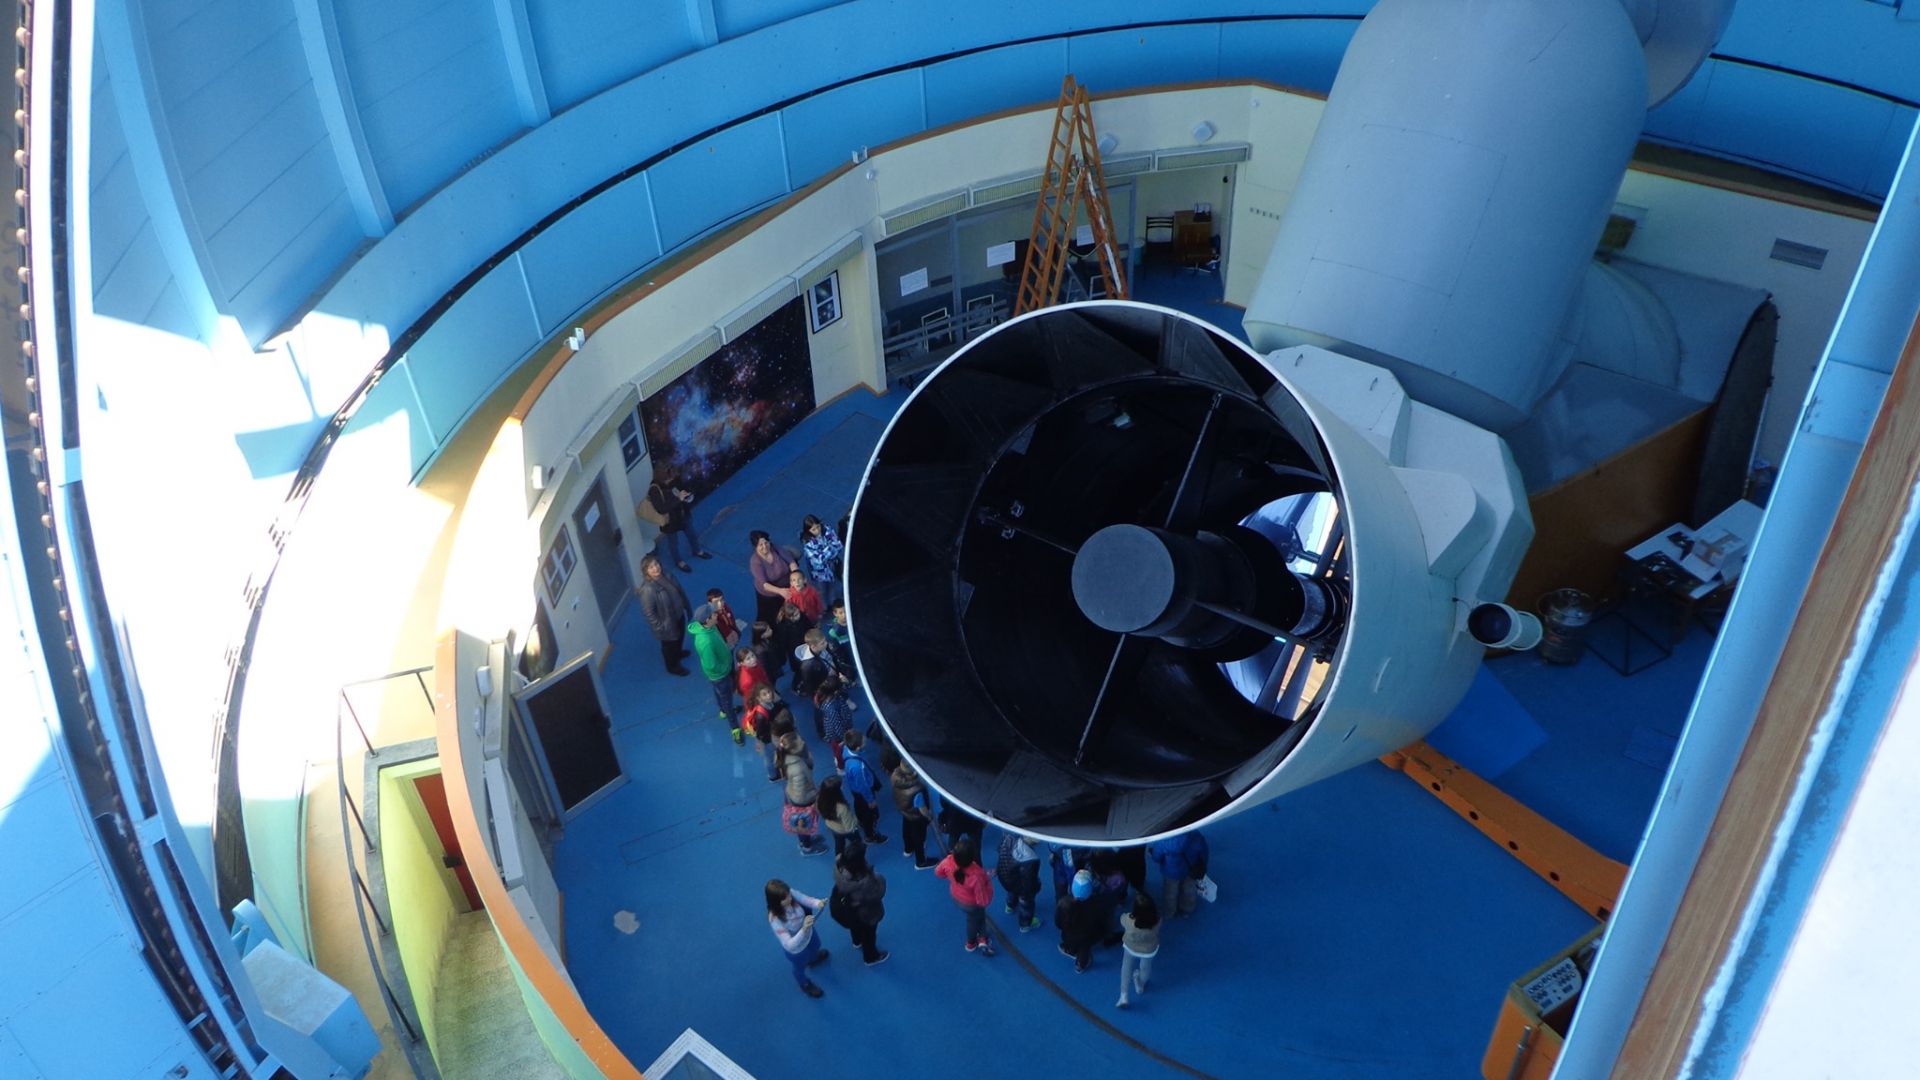 Този уикенд може да посетите обсерваторията в Рожен